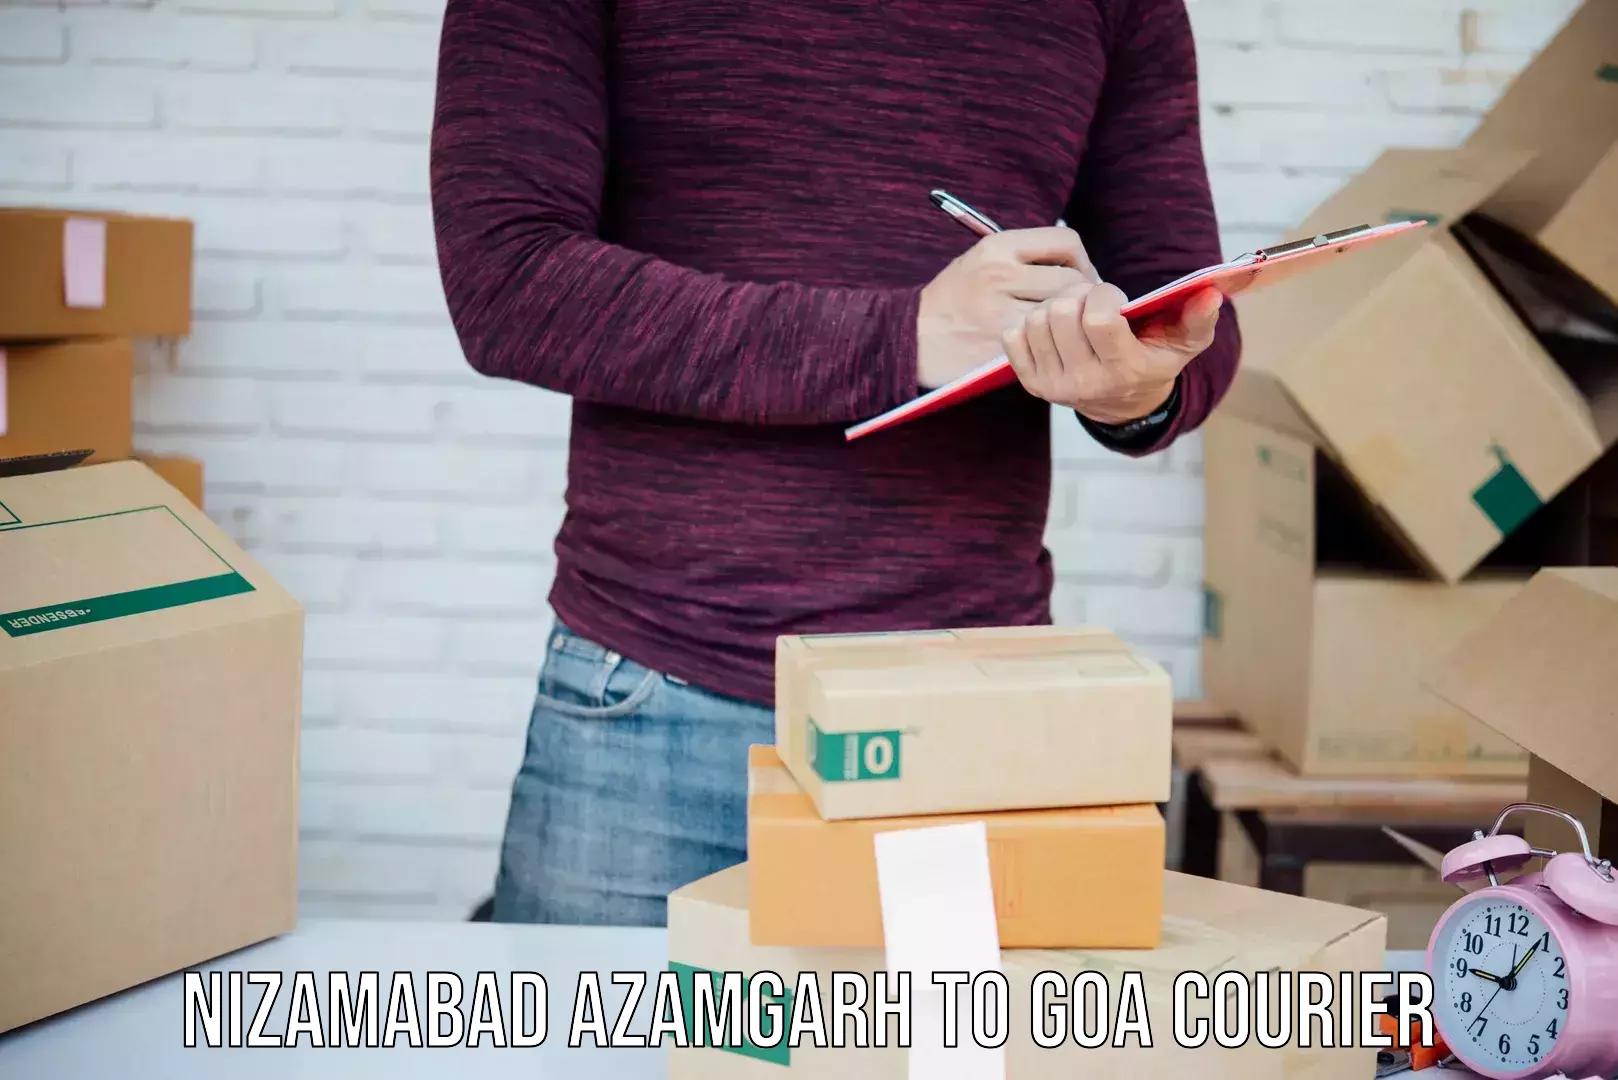 International courier rates Nizamabad Azamgarh to Bardez